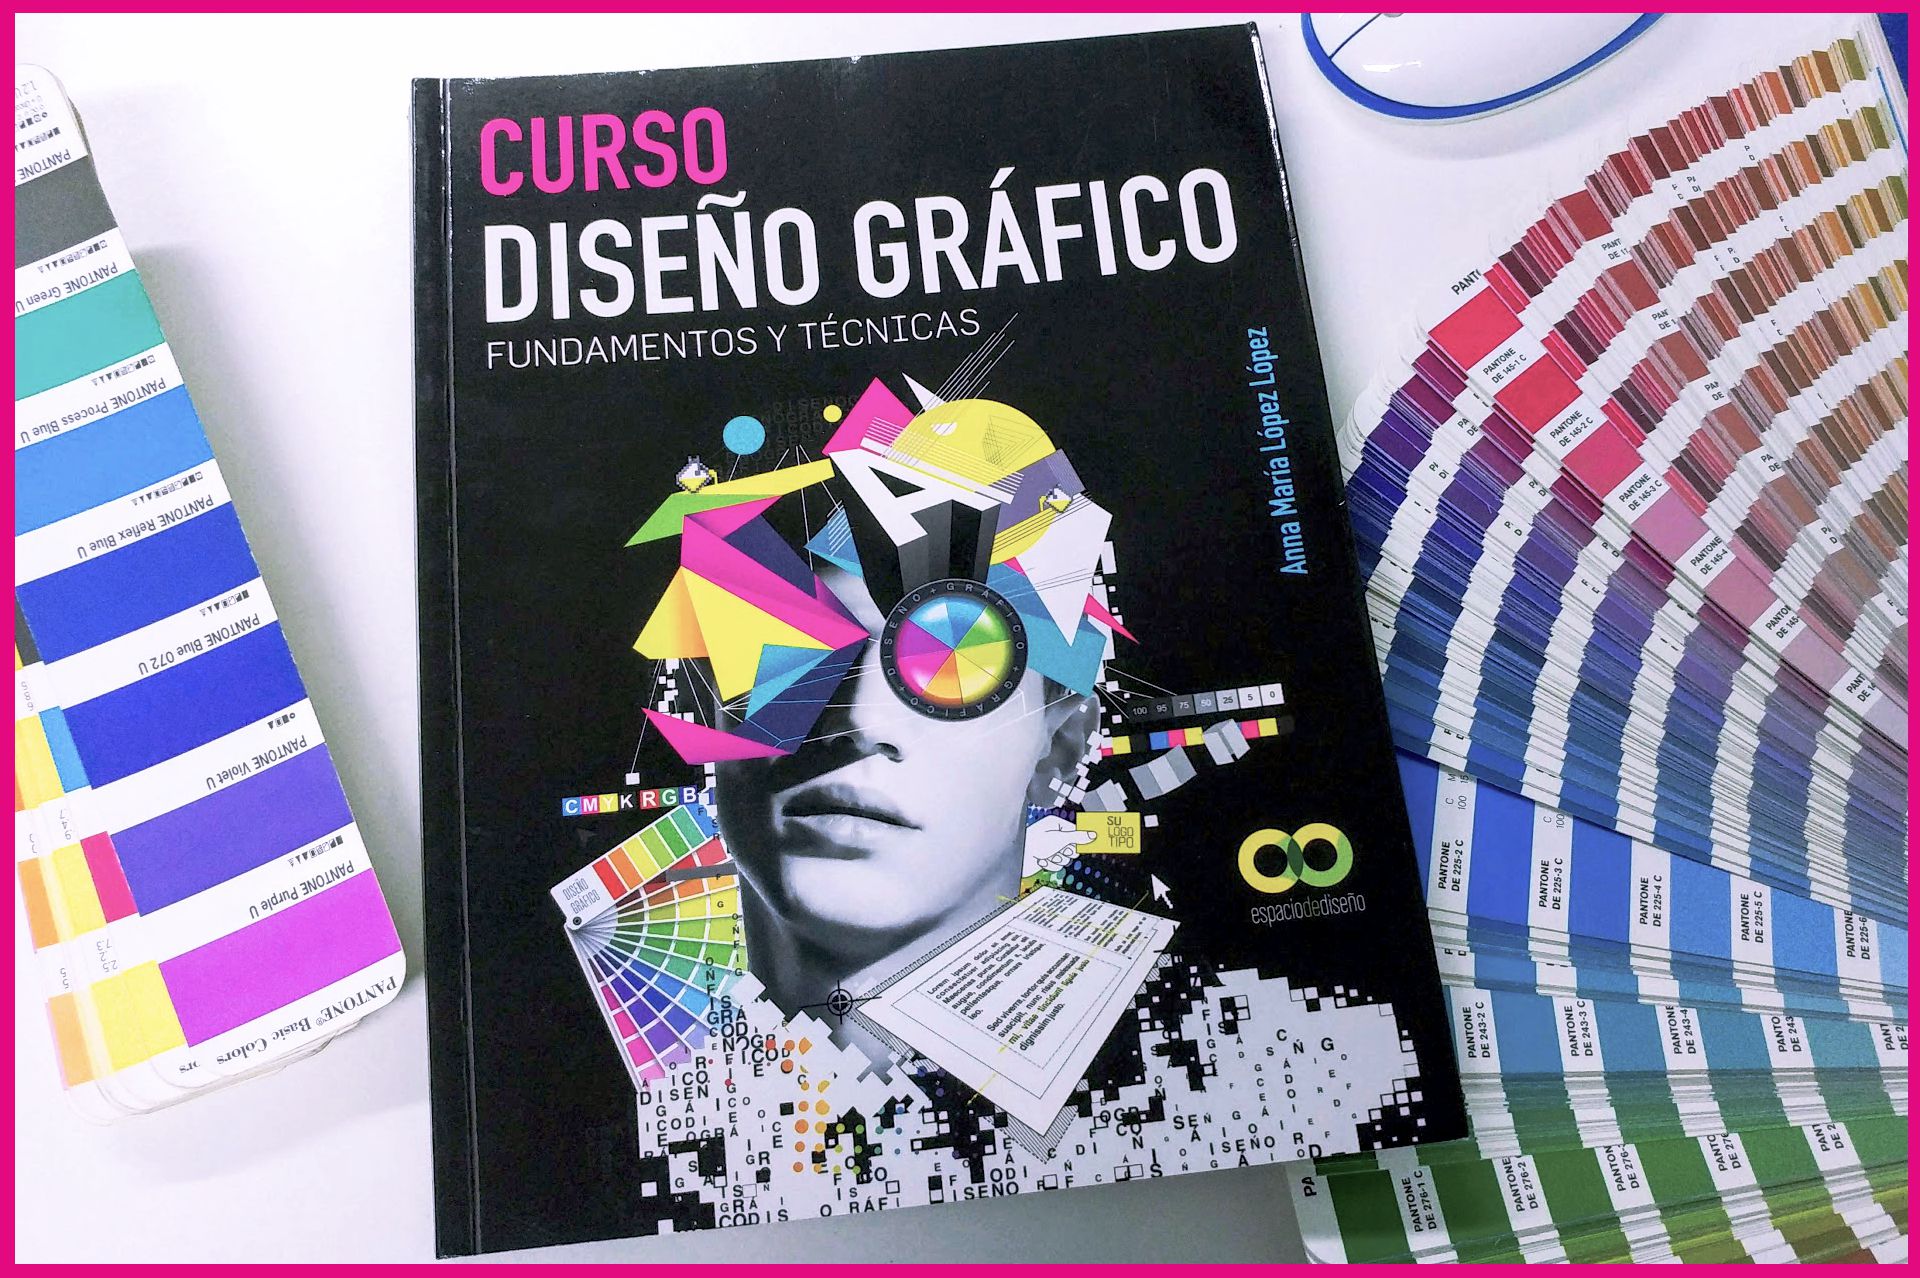 Definición de DISEÑO GRÁFICO en el libro Curso Diseño Gráfico, Fundamentos y Técnicas